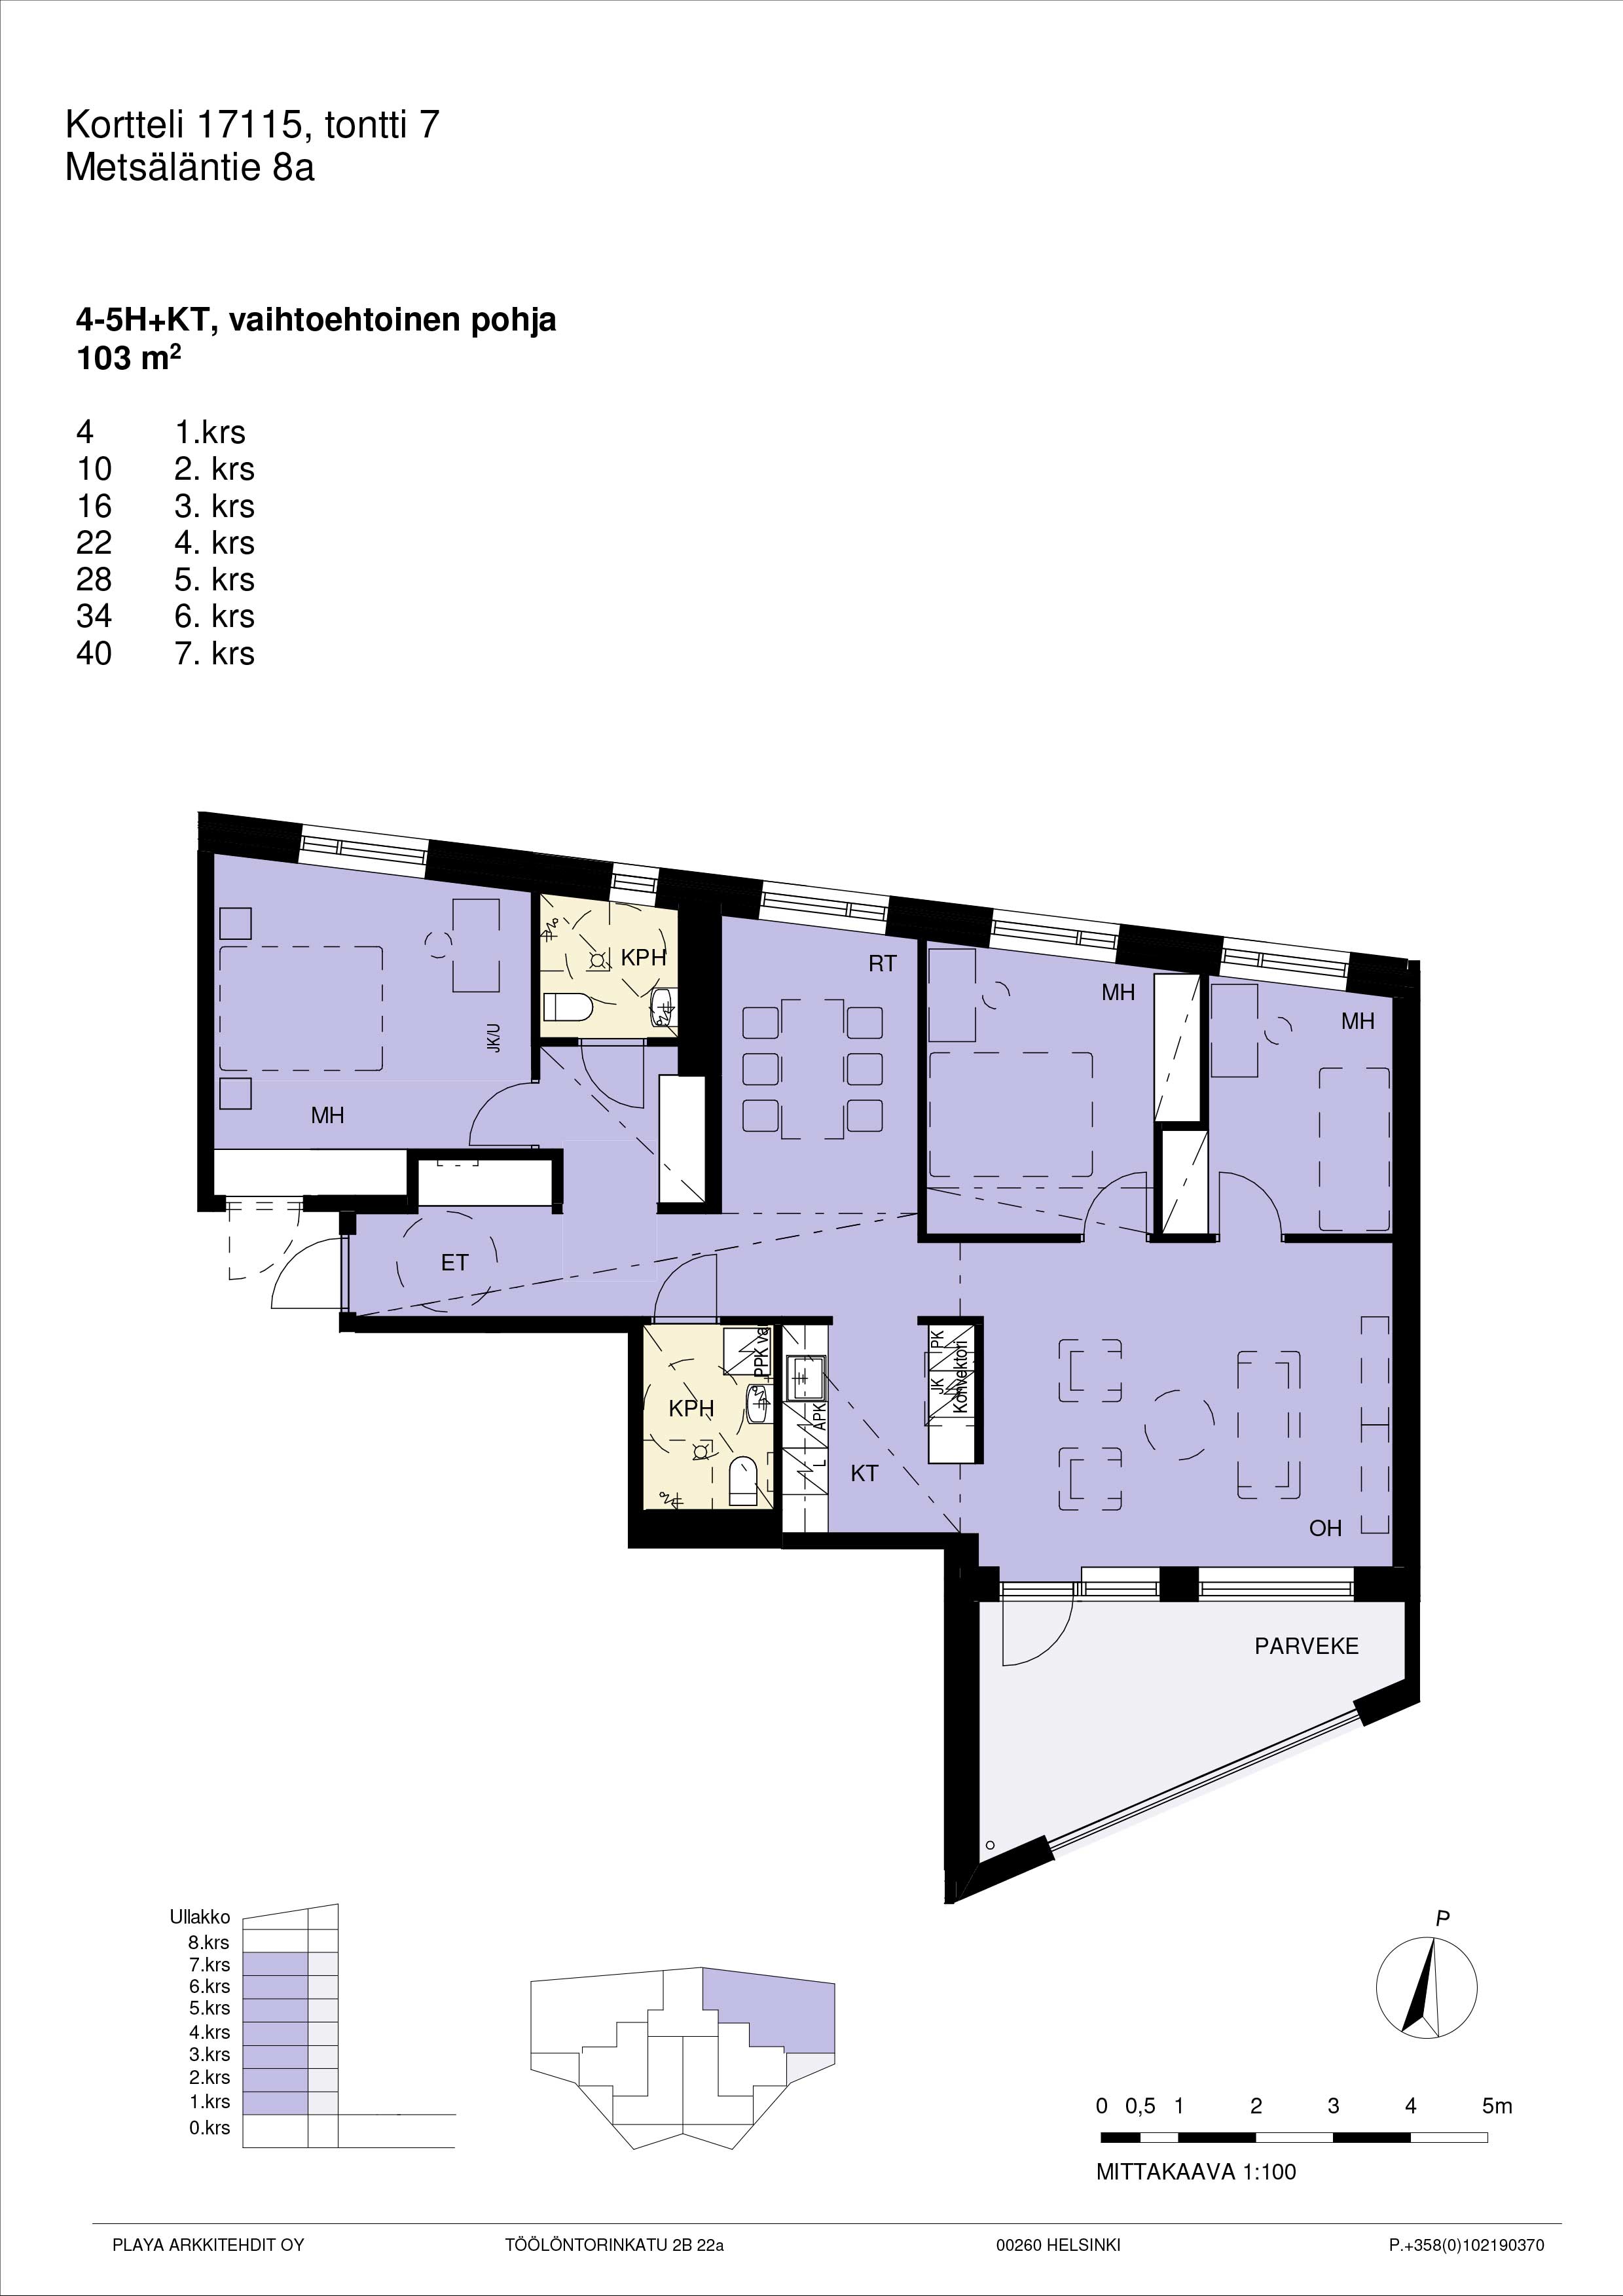 Pohjakuva A22, 4-5h+kt yhtenäinen suuri asunto 103 m2